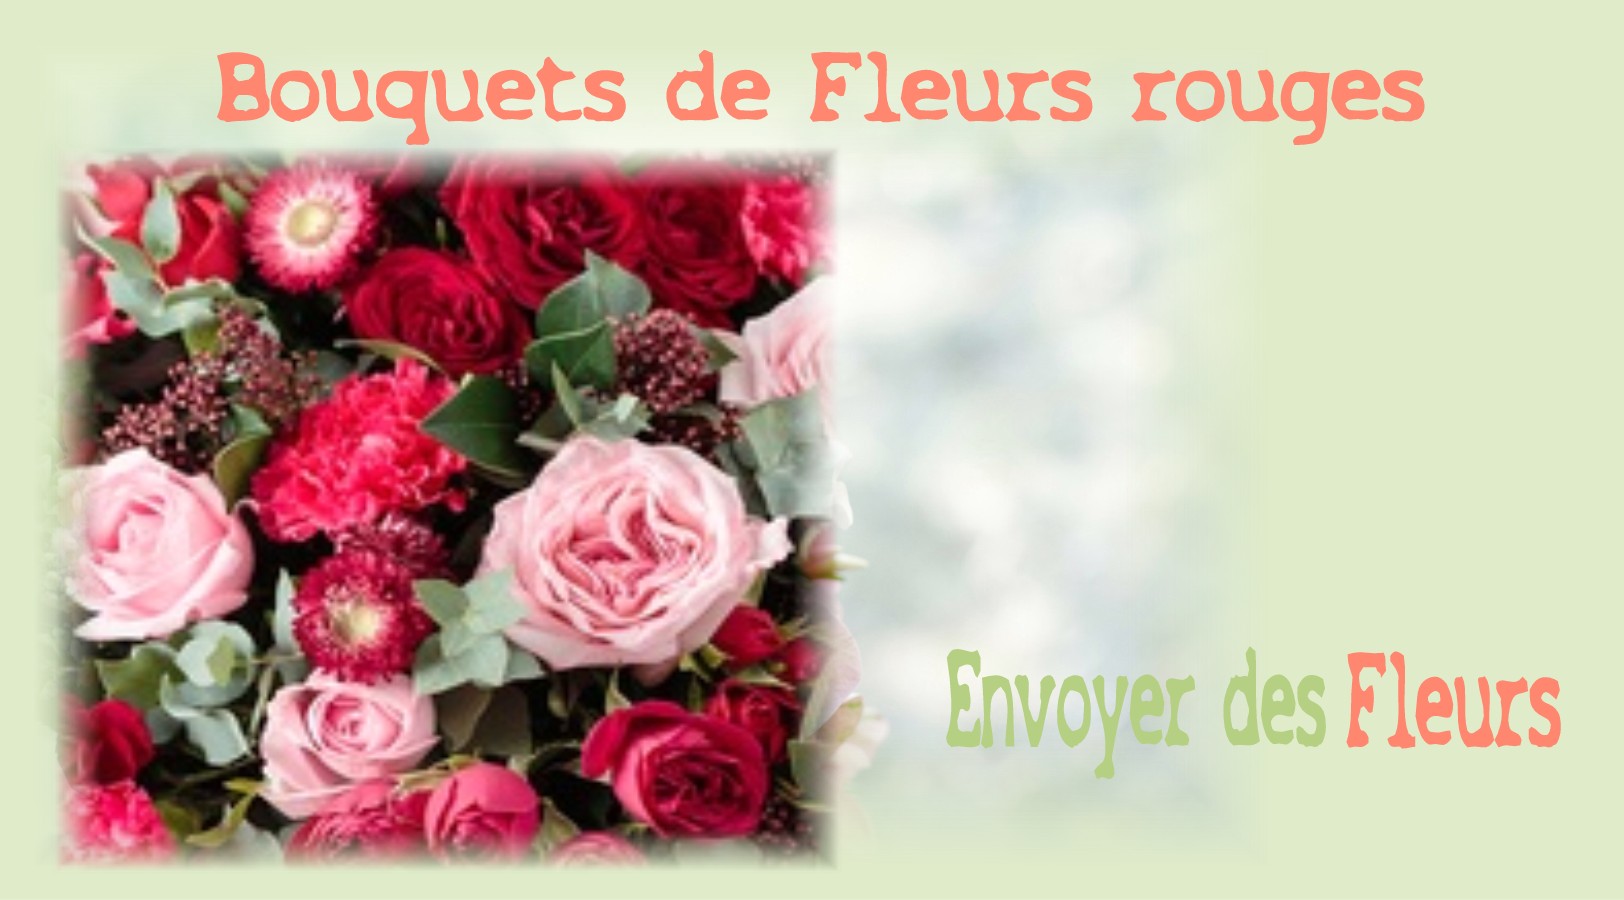 BOUQUETS DE FLEURS ROUGES - FLEURISTE des ALPES DE HAUTE PROVENCE - ENVOYER DES FLEURS